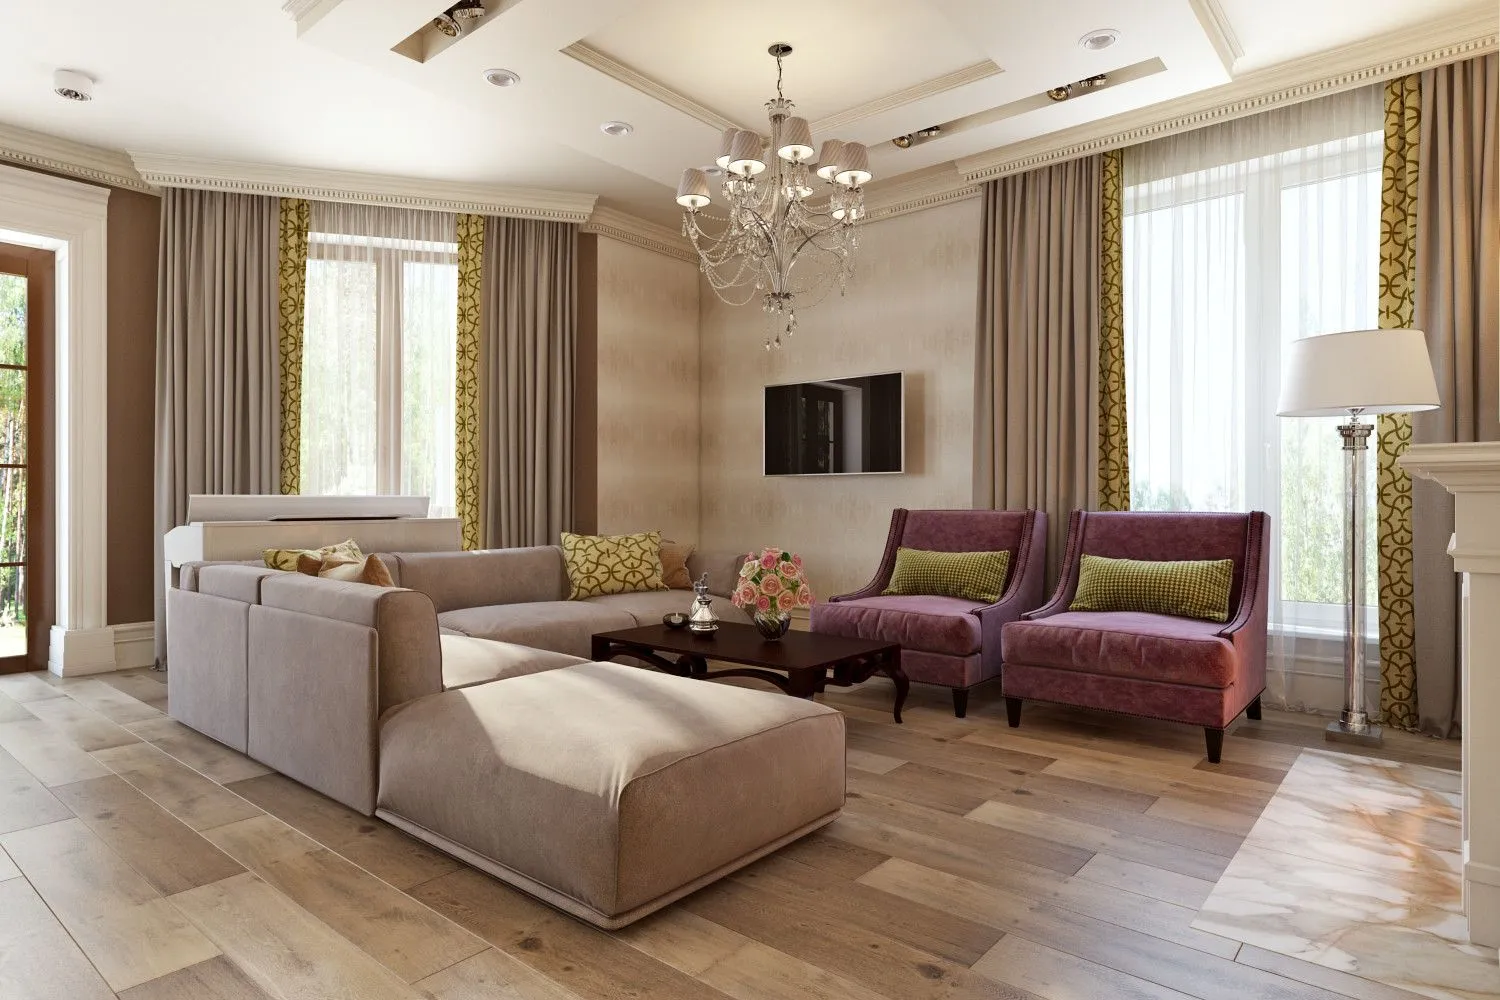 Гостиная с двумя диванами: руководство по декорированию и меблировке вашего пространства